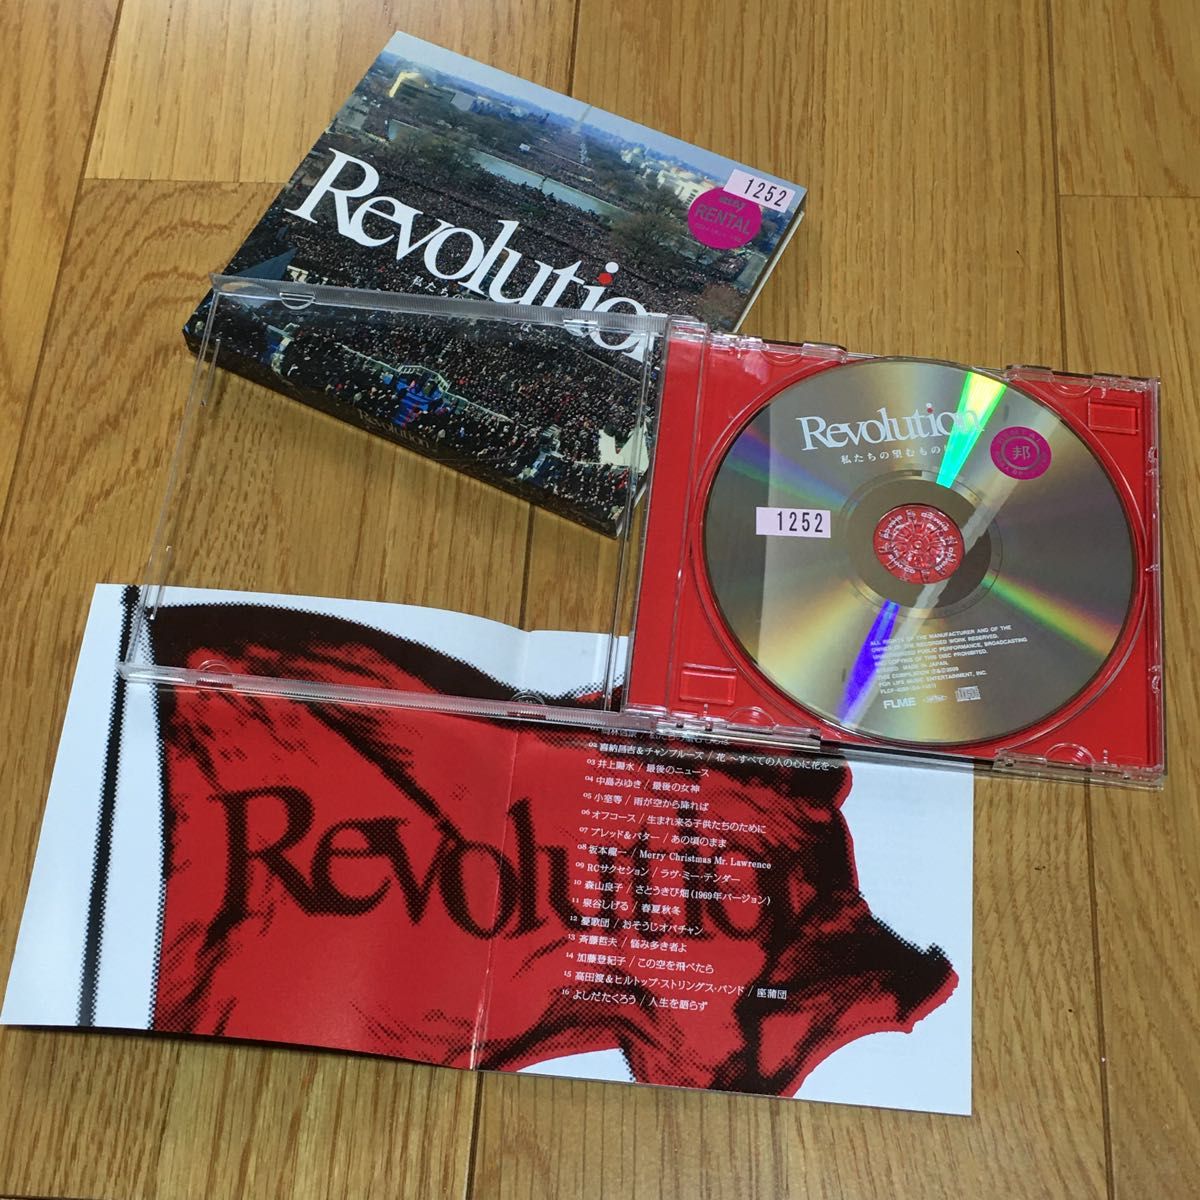 used CD Revolution 私たちの望むものは 中古CD